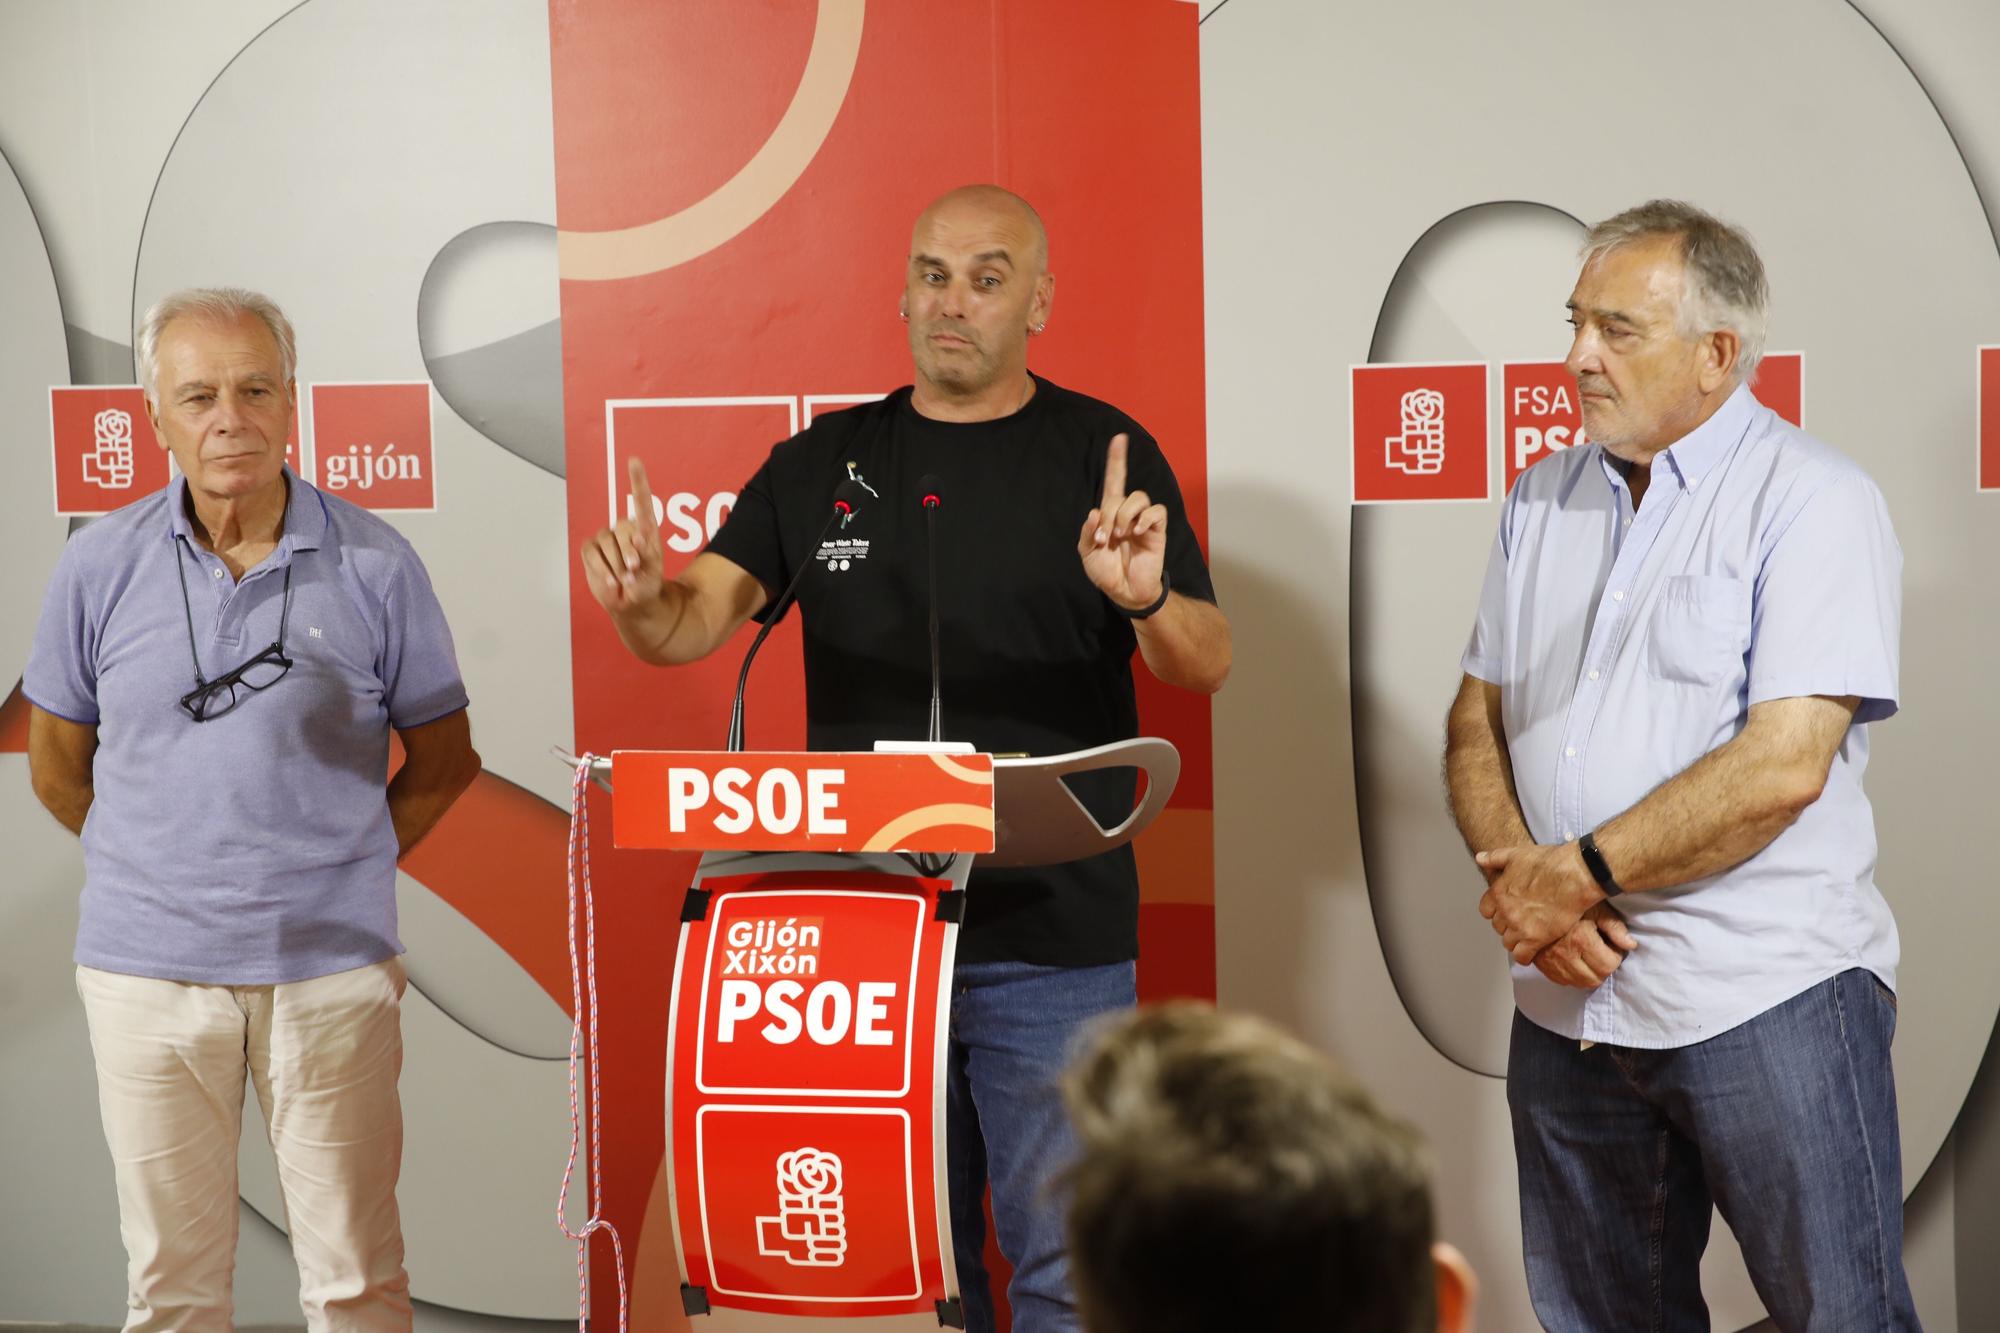 EN IMÁGENES: Reunión de la ejecutiva del PSOE gijonés tras salir adelante el proceso de primarias